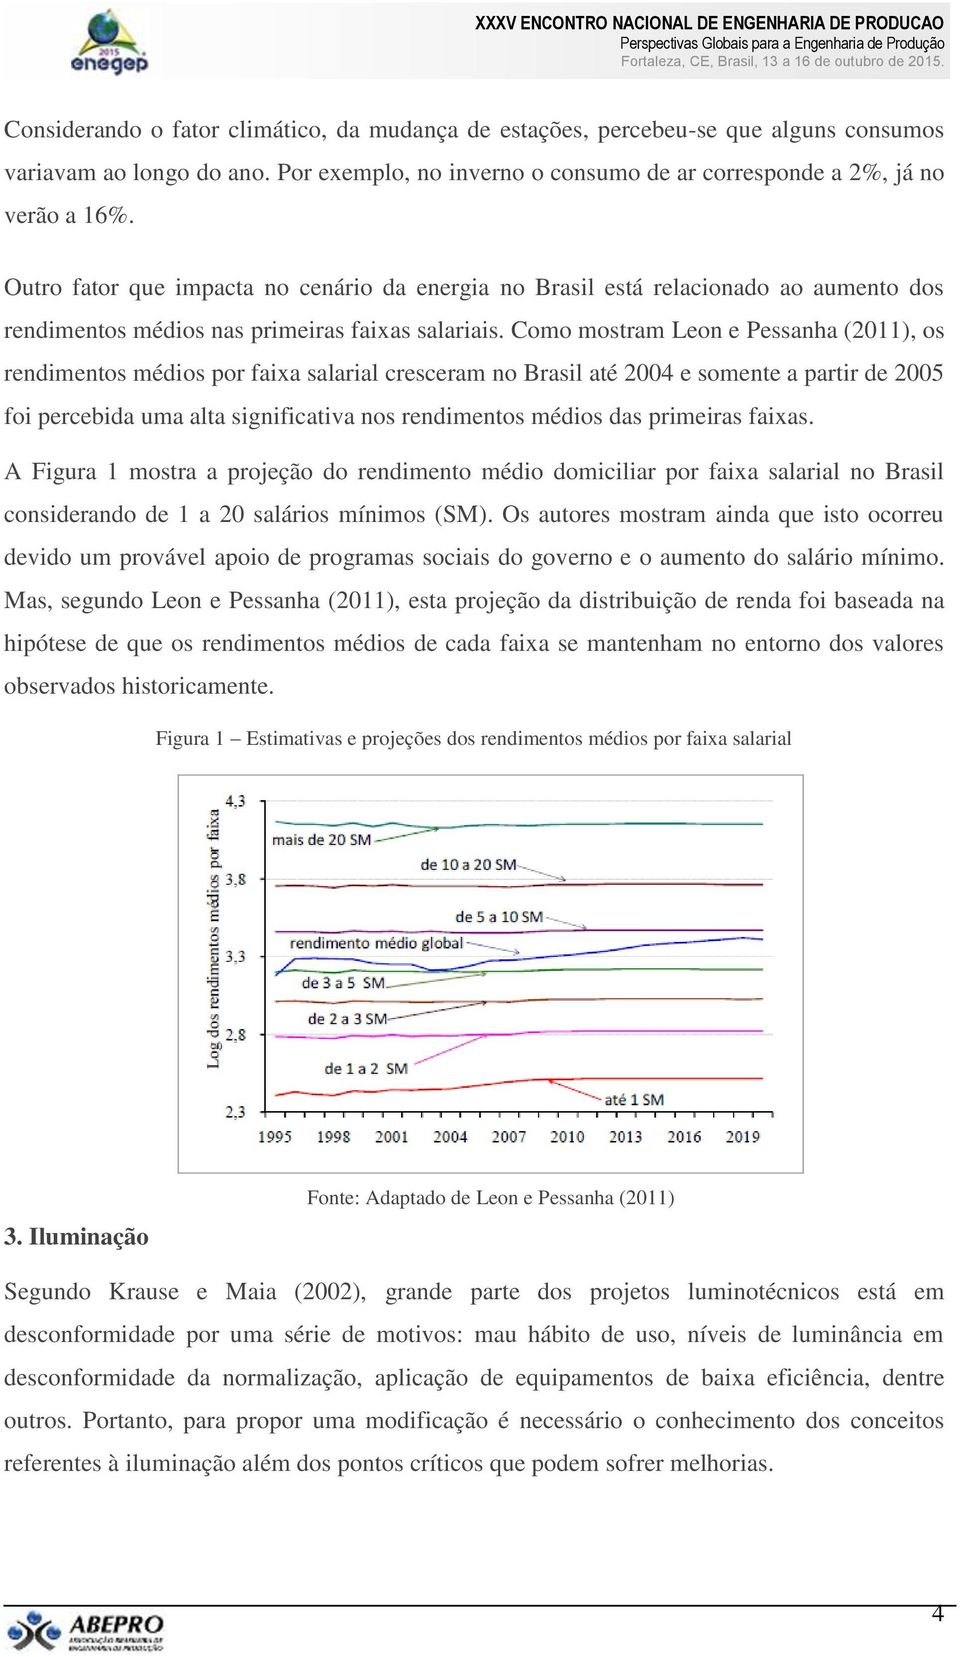 Como mostram Leon e Pessanha (2011), os rendimentos médios por faixa salarial cresceram no Brasil até 2004 e somente a partir de 2005 foi percebida uma alta significativa nos rendimentos médios das